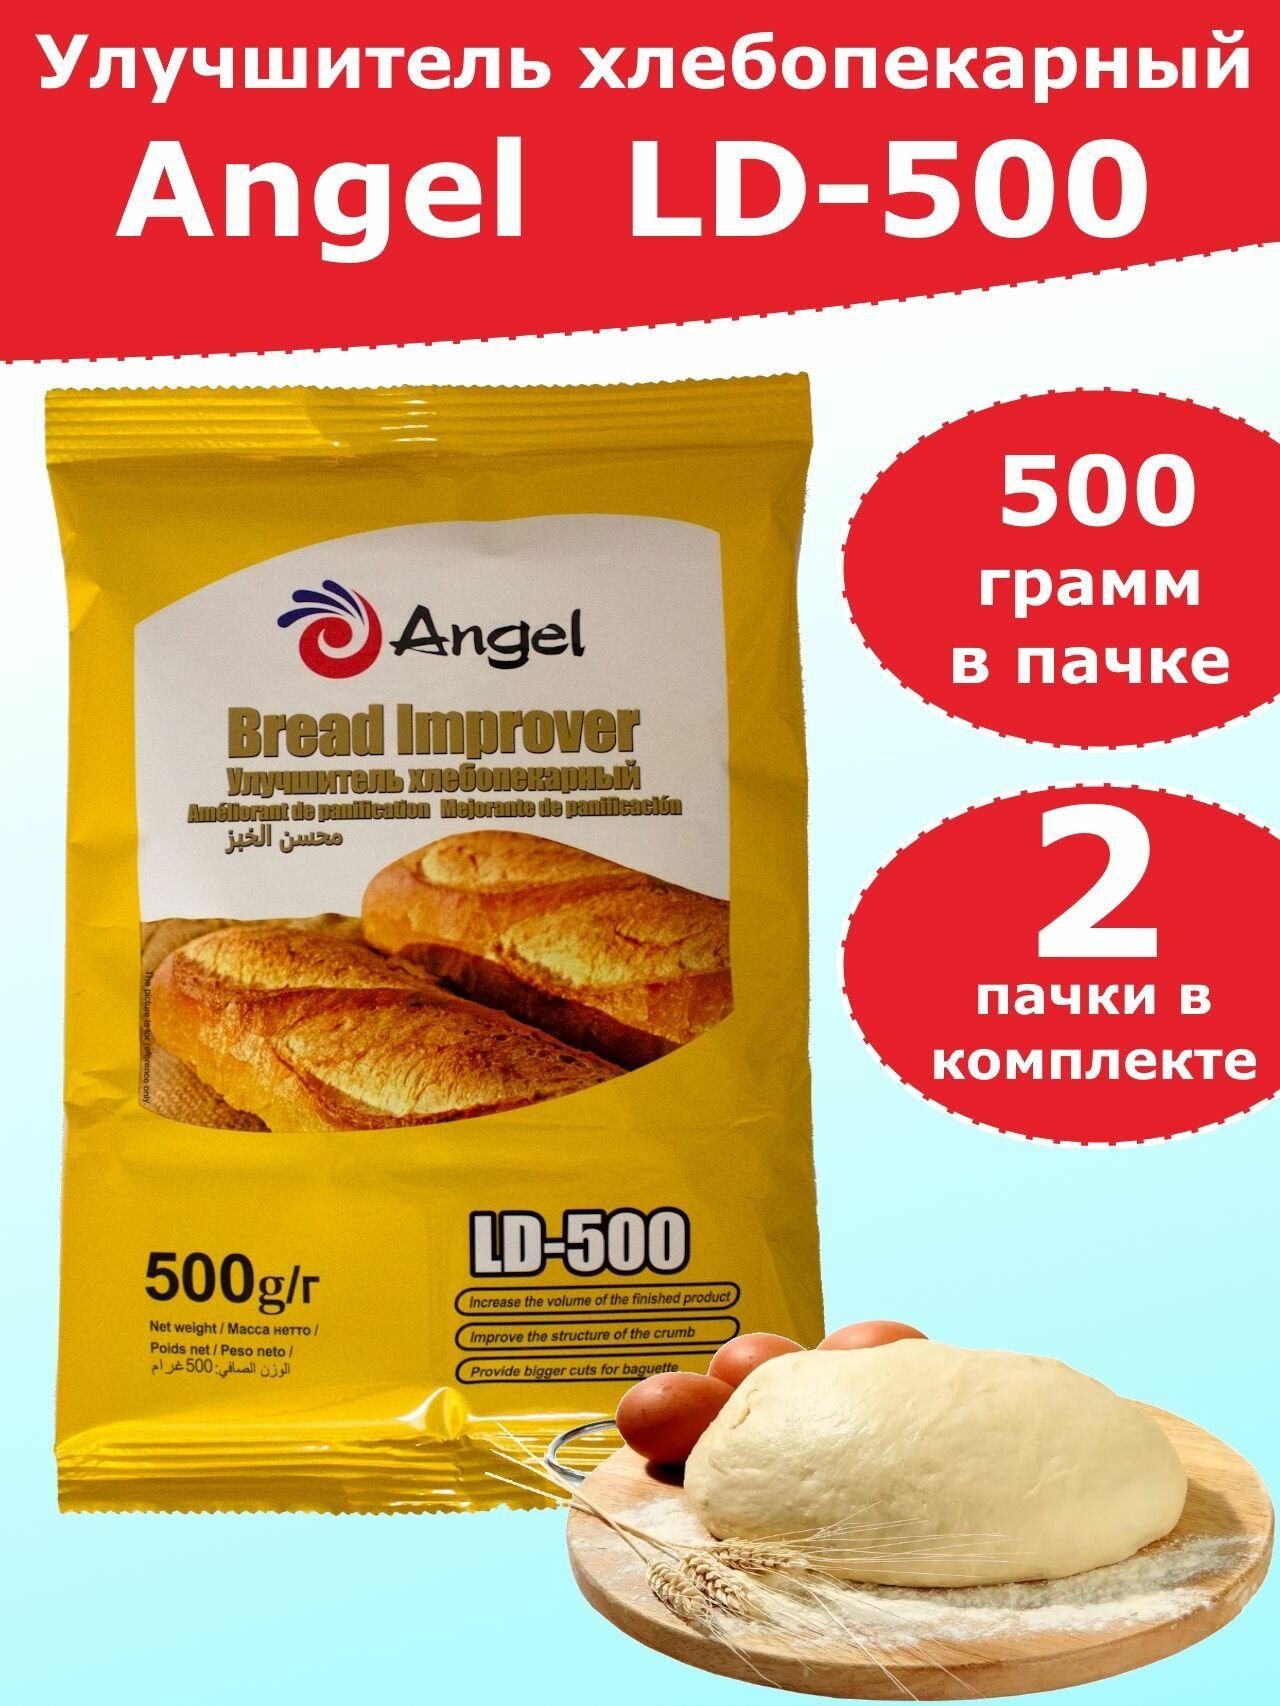 Улучшитель хлебопекарный Angel LD-500, 0,5 кг - 2 пакета